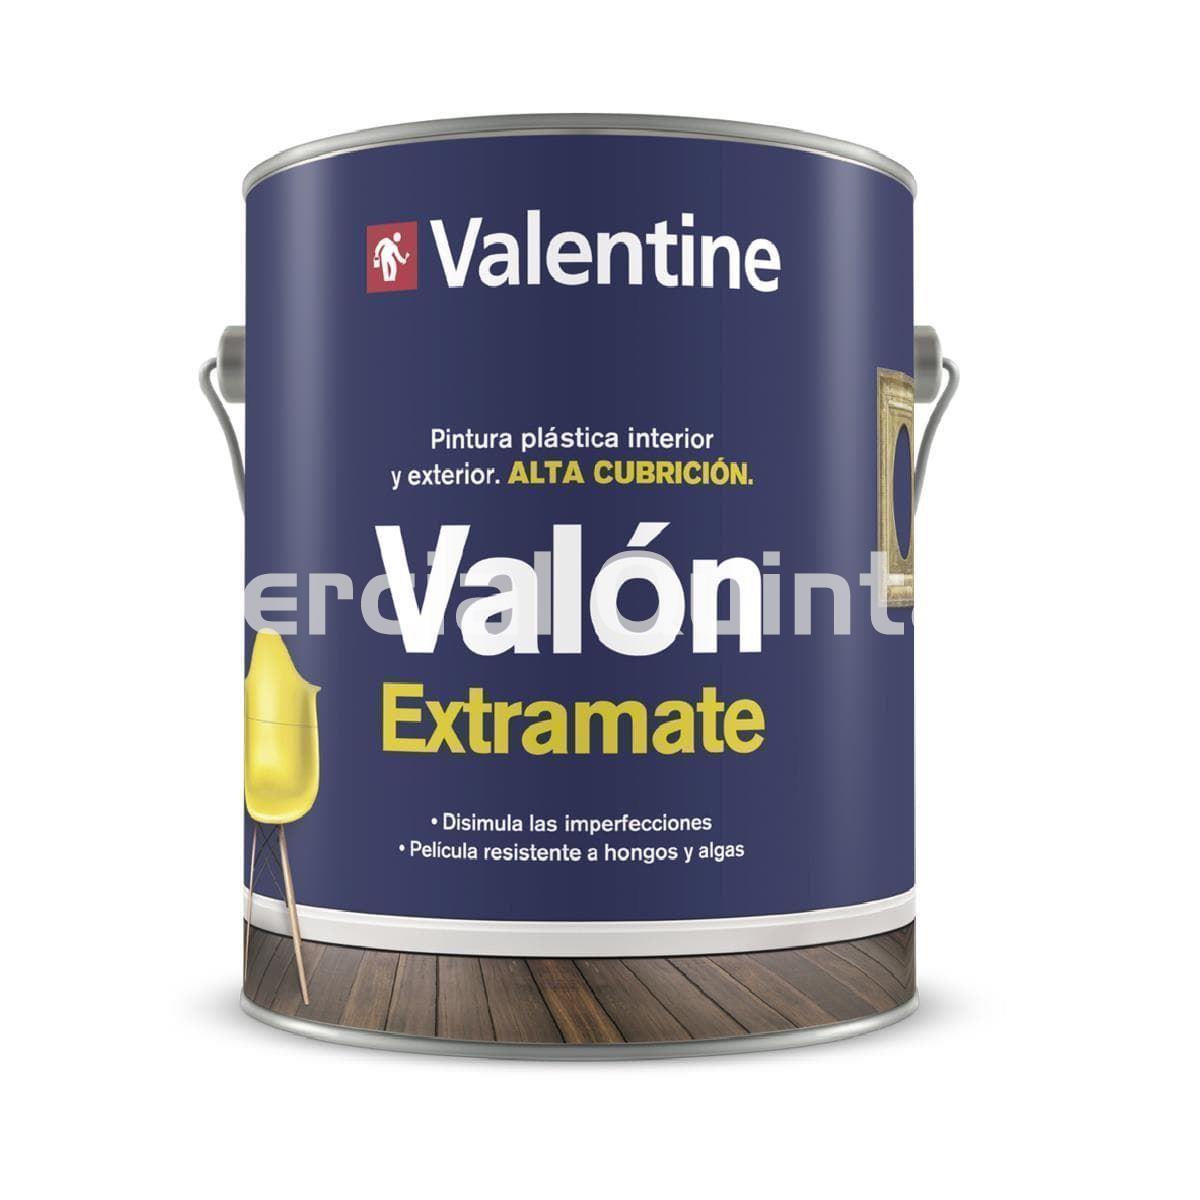 VALENTINE Valón Extramate - Imagen 1